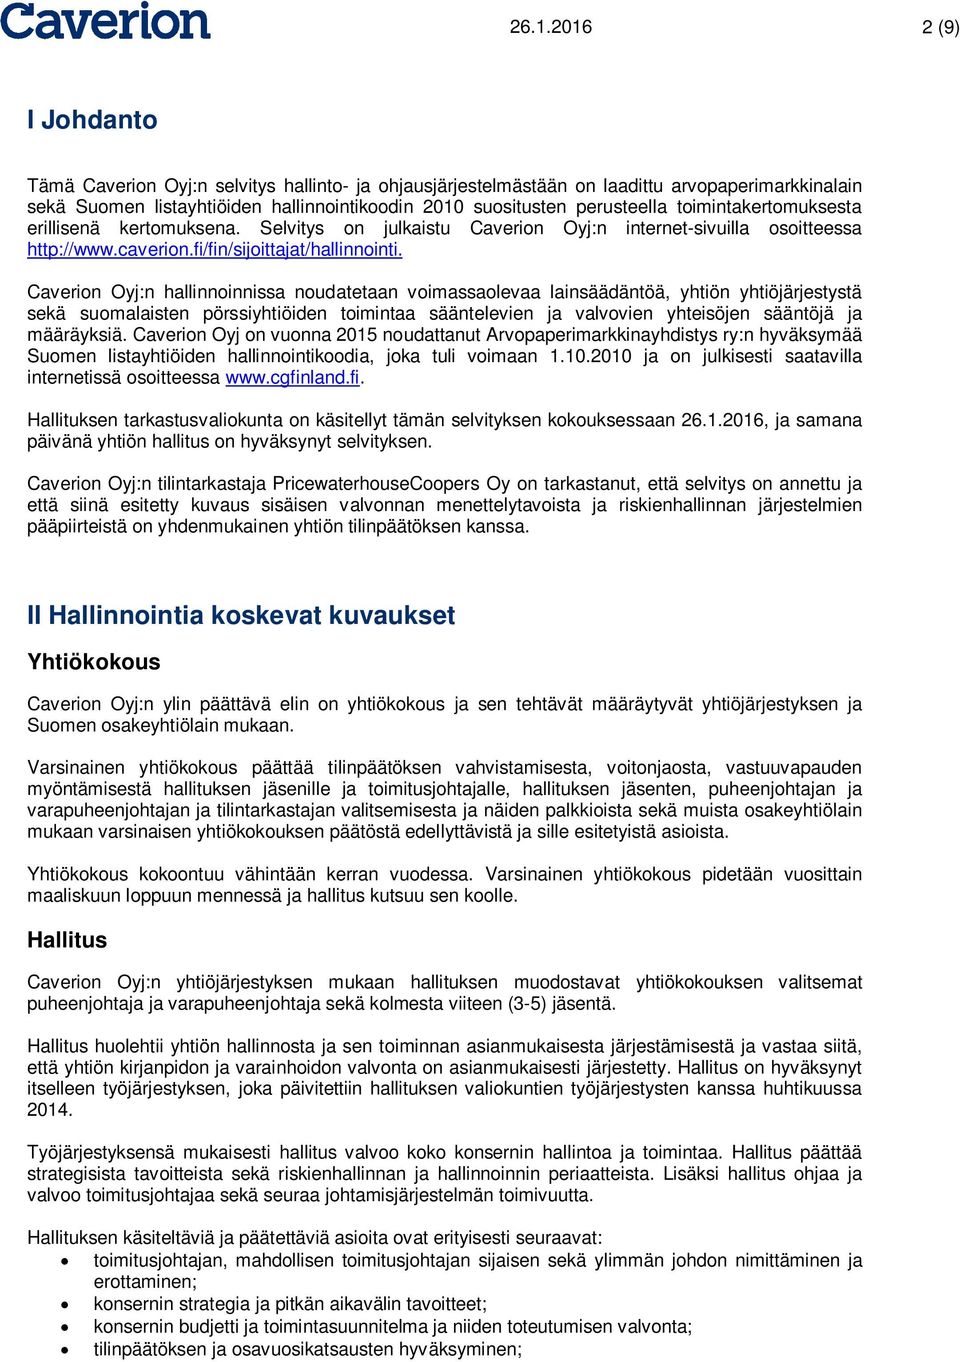 Caverion Oyj:n hallinnoinnissa noudatetaan voimassaolevaa lainsäädäntöä, yhtiön yhtiöjärjestystä sekä suomalaisten pörssiyhtiöiden toimintaa sääntelevien ja valvovien yhteisöjen sääntöjä ja